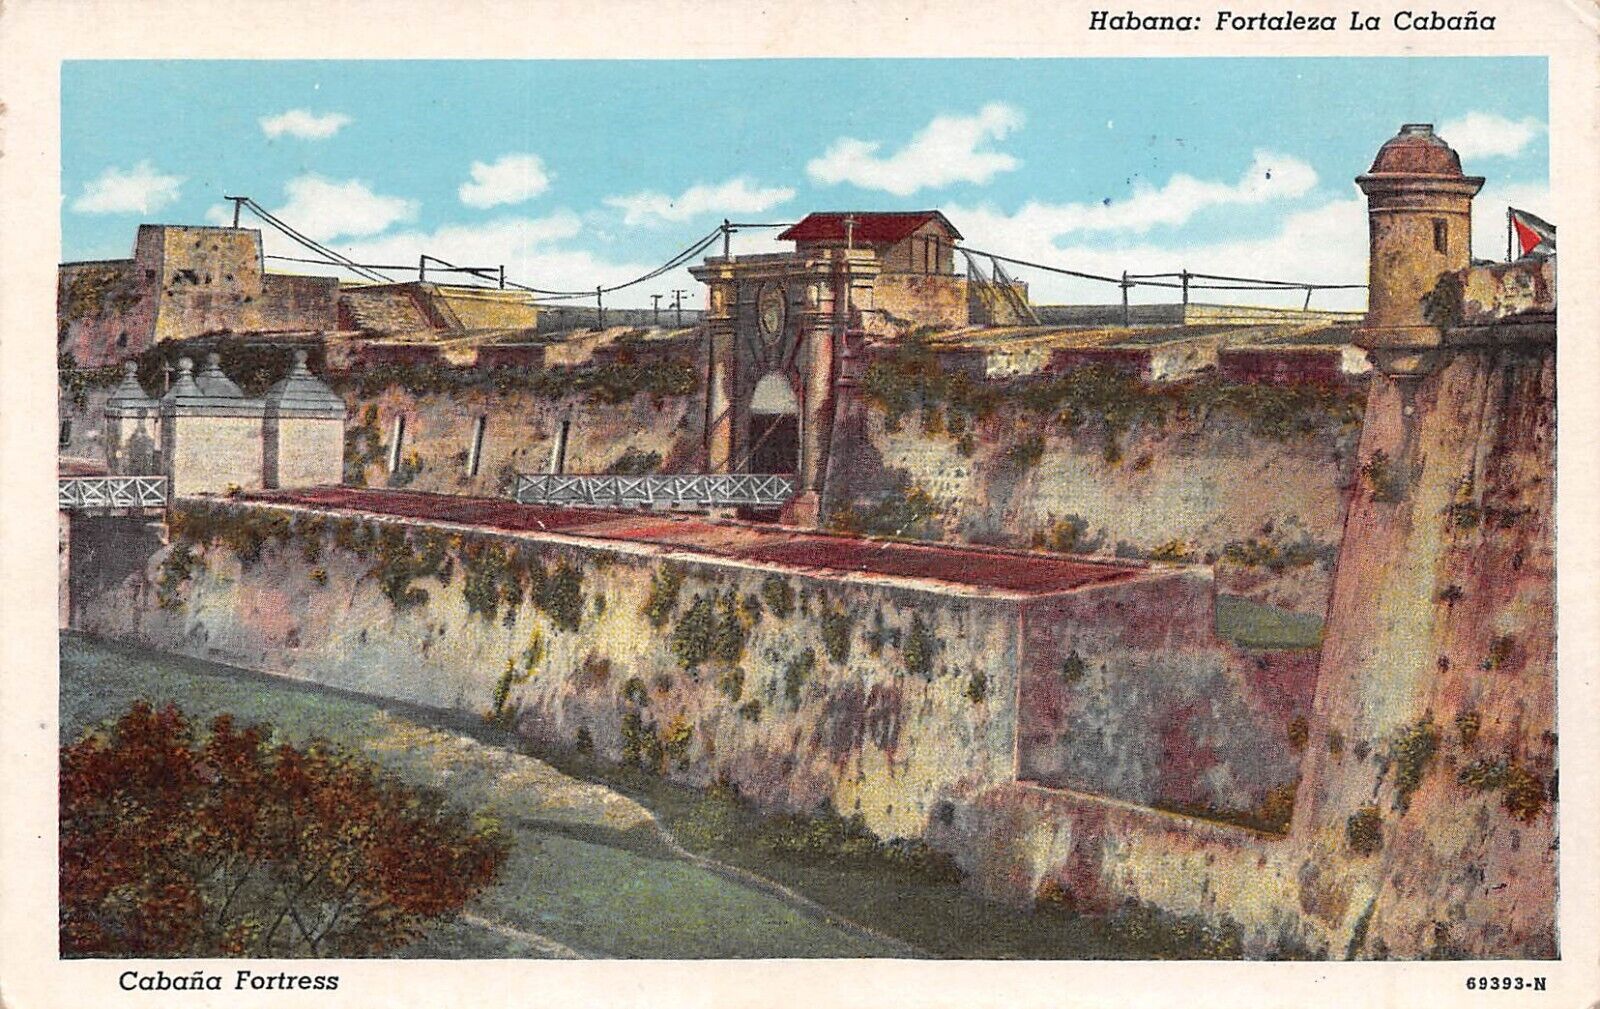 Habana Fortaleza la Cabana Cabana Fortress 1953 Postcard 4877